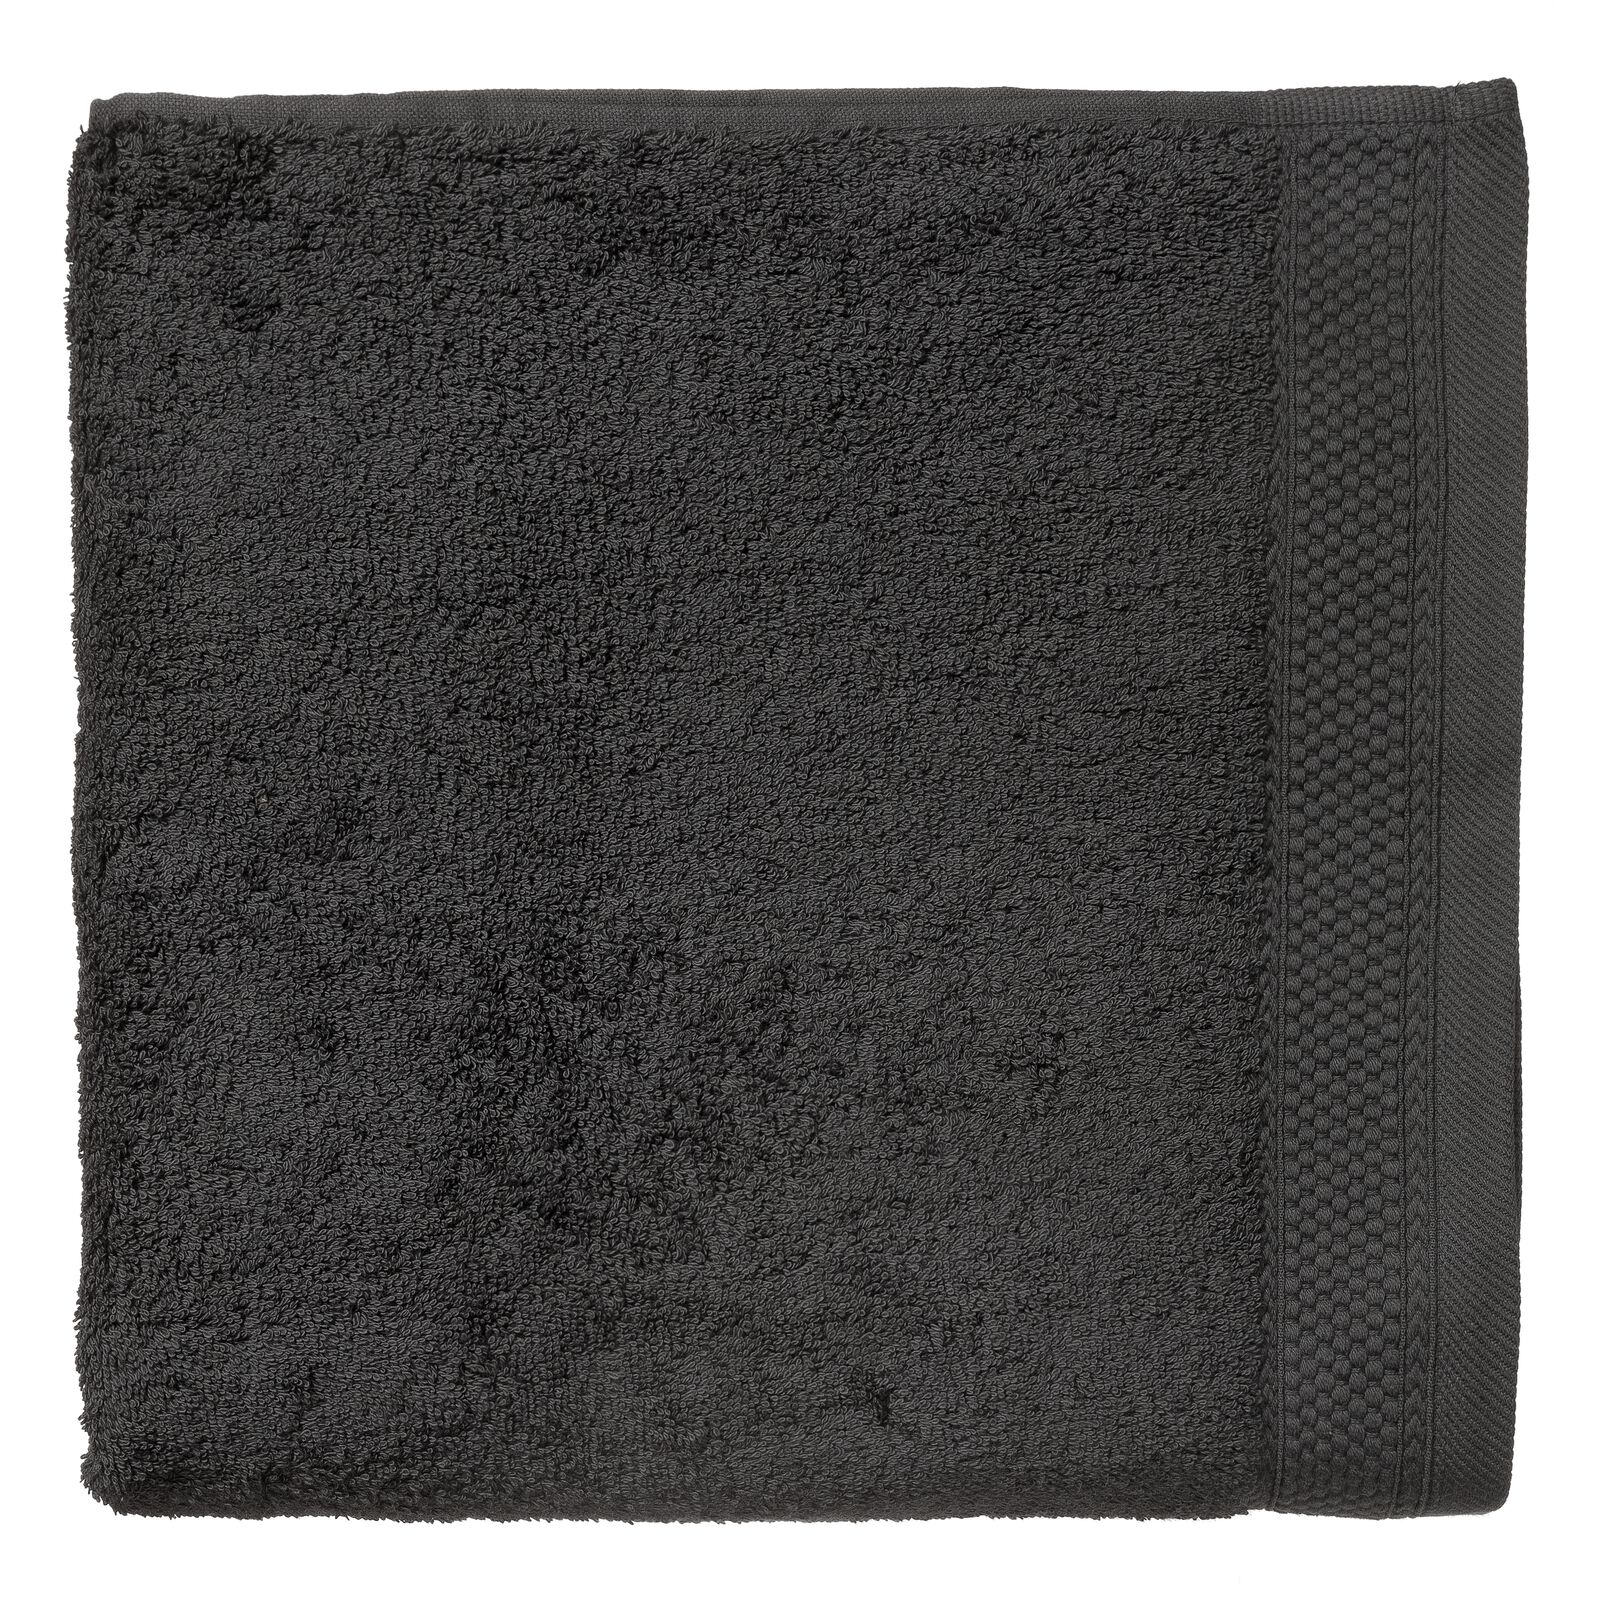 handdoek - 70 x 140 cm - hotelkwaliteit - donkergrijs - 5217015 - HEMA